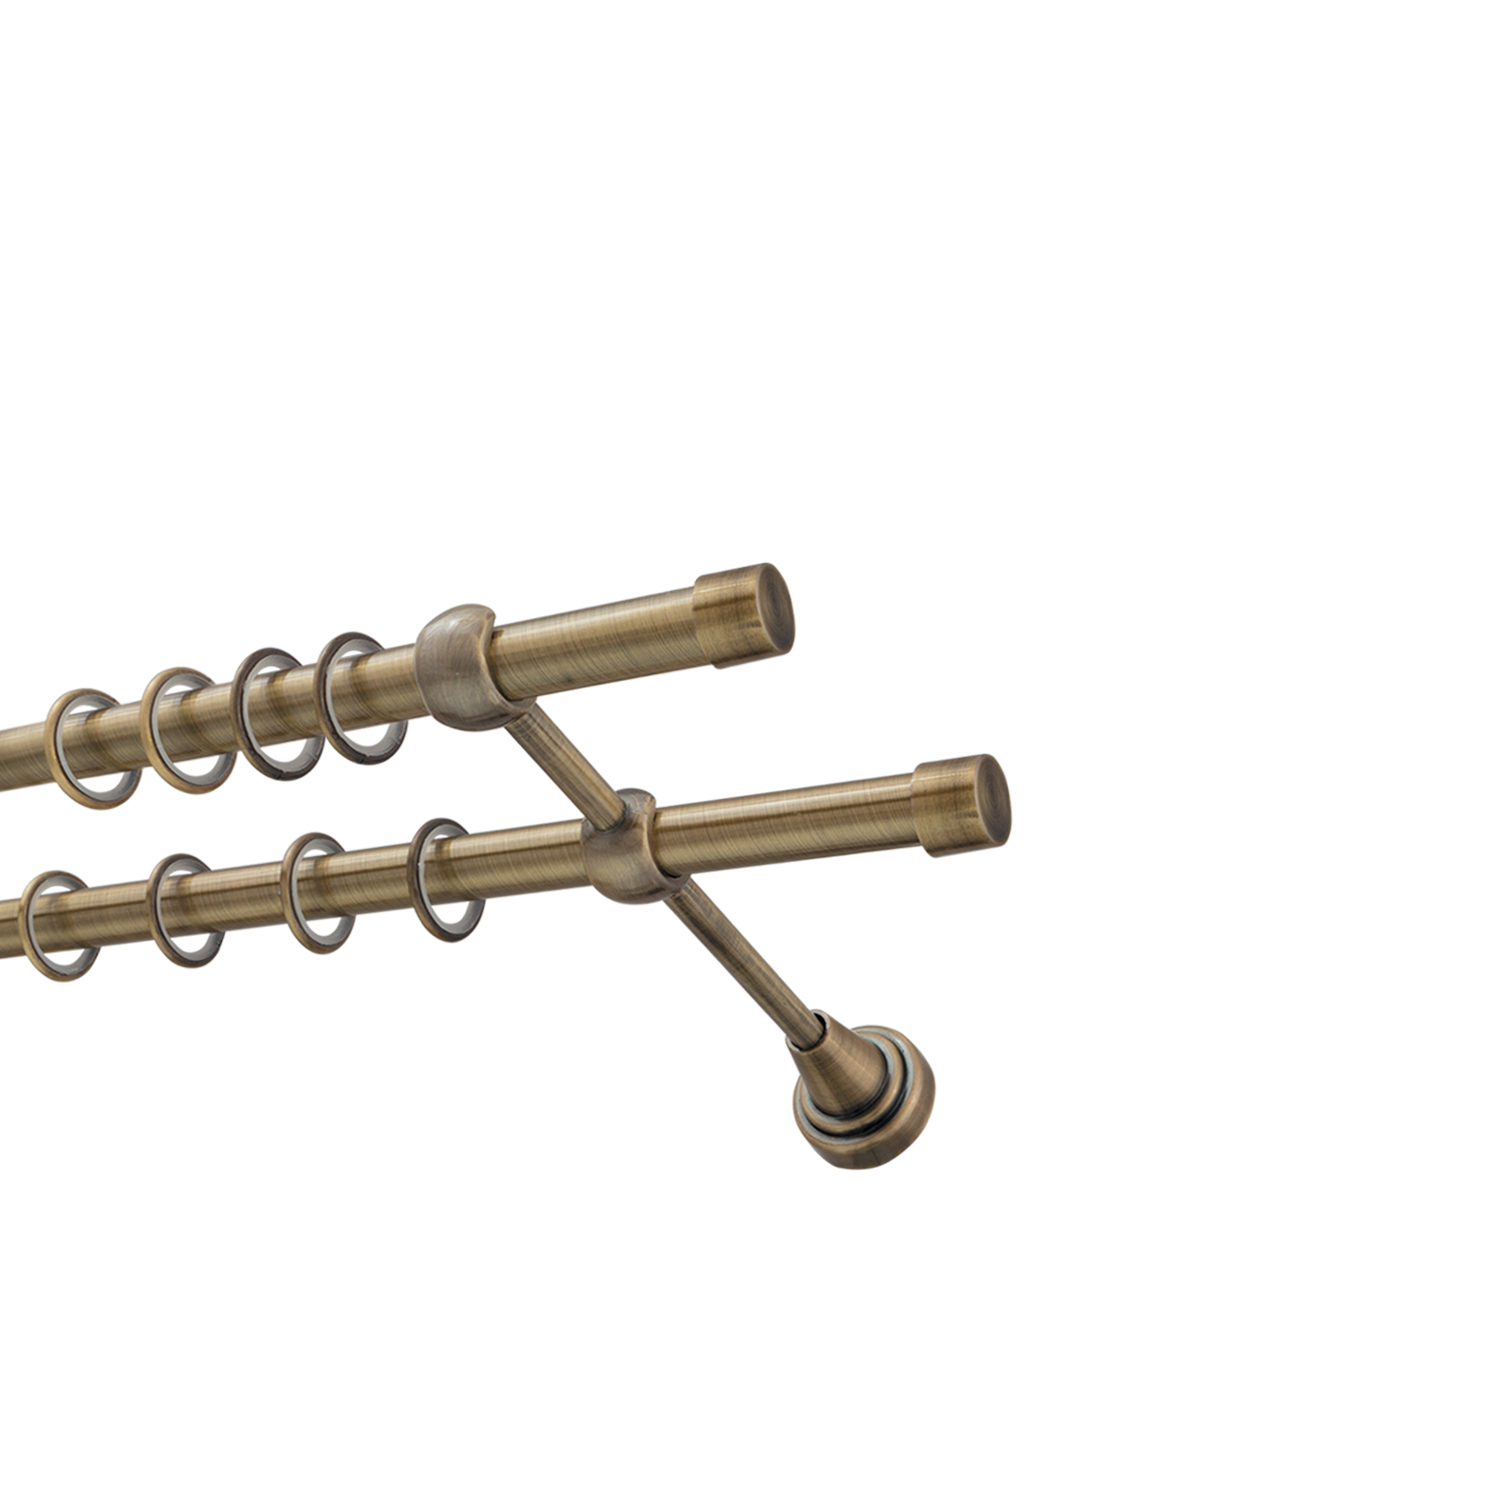 Металлический карниз для штор Заглушка, двухрядный 16/16 мм, бронза, гладкая штанга, длина 240 см - фото Wikidecor.ru